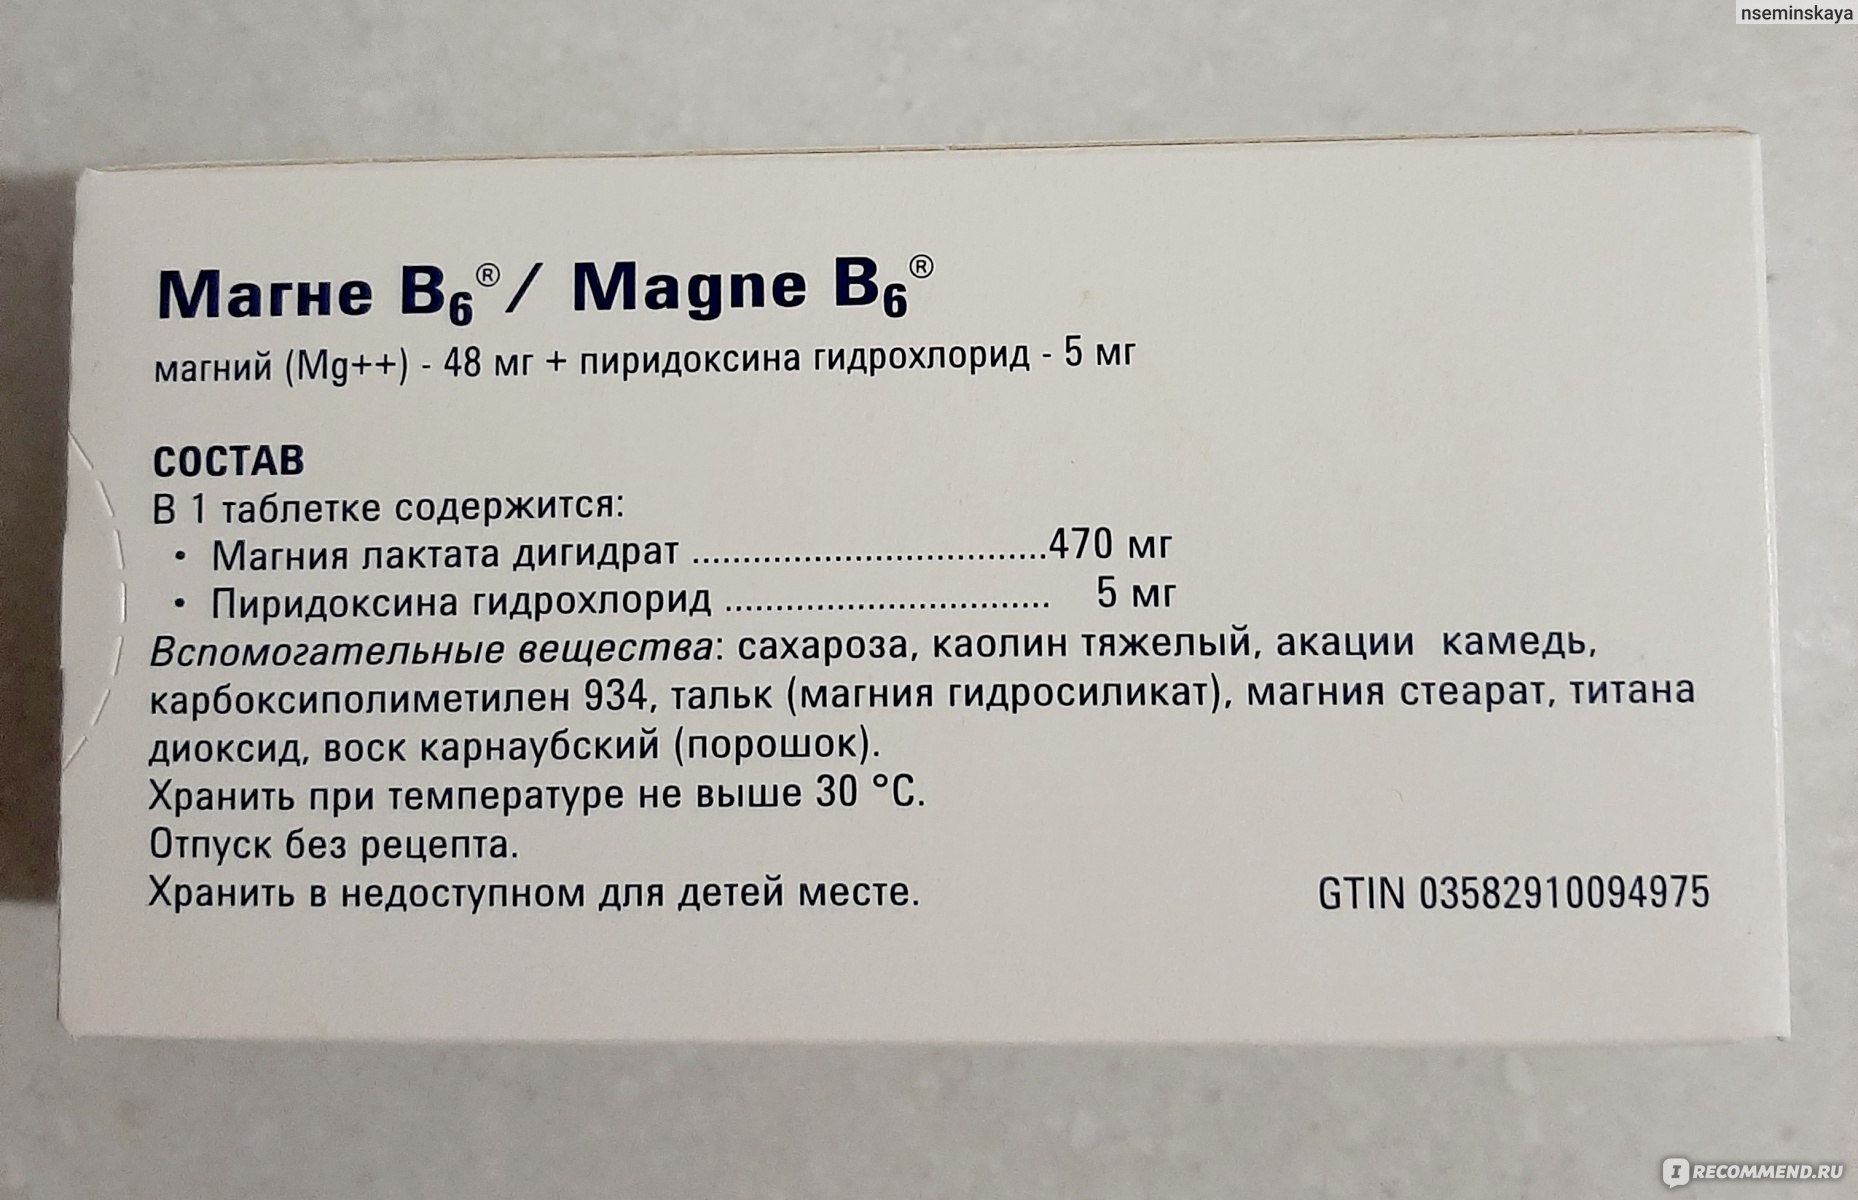 Как пить магний б6 в таблетках. Магний б6 пиридоксина гидрохлорид. Магне в6 магний пиридоксина гидрохлорид. Магний б6 (магний лактат+пиридоксина гидрохлорид. Магния лактат 470 мг пиридоксина гидрохлорид 5 мг.